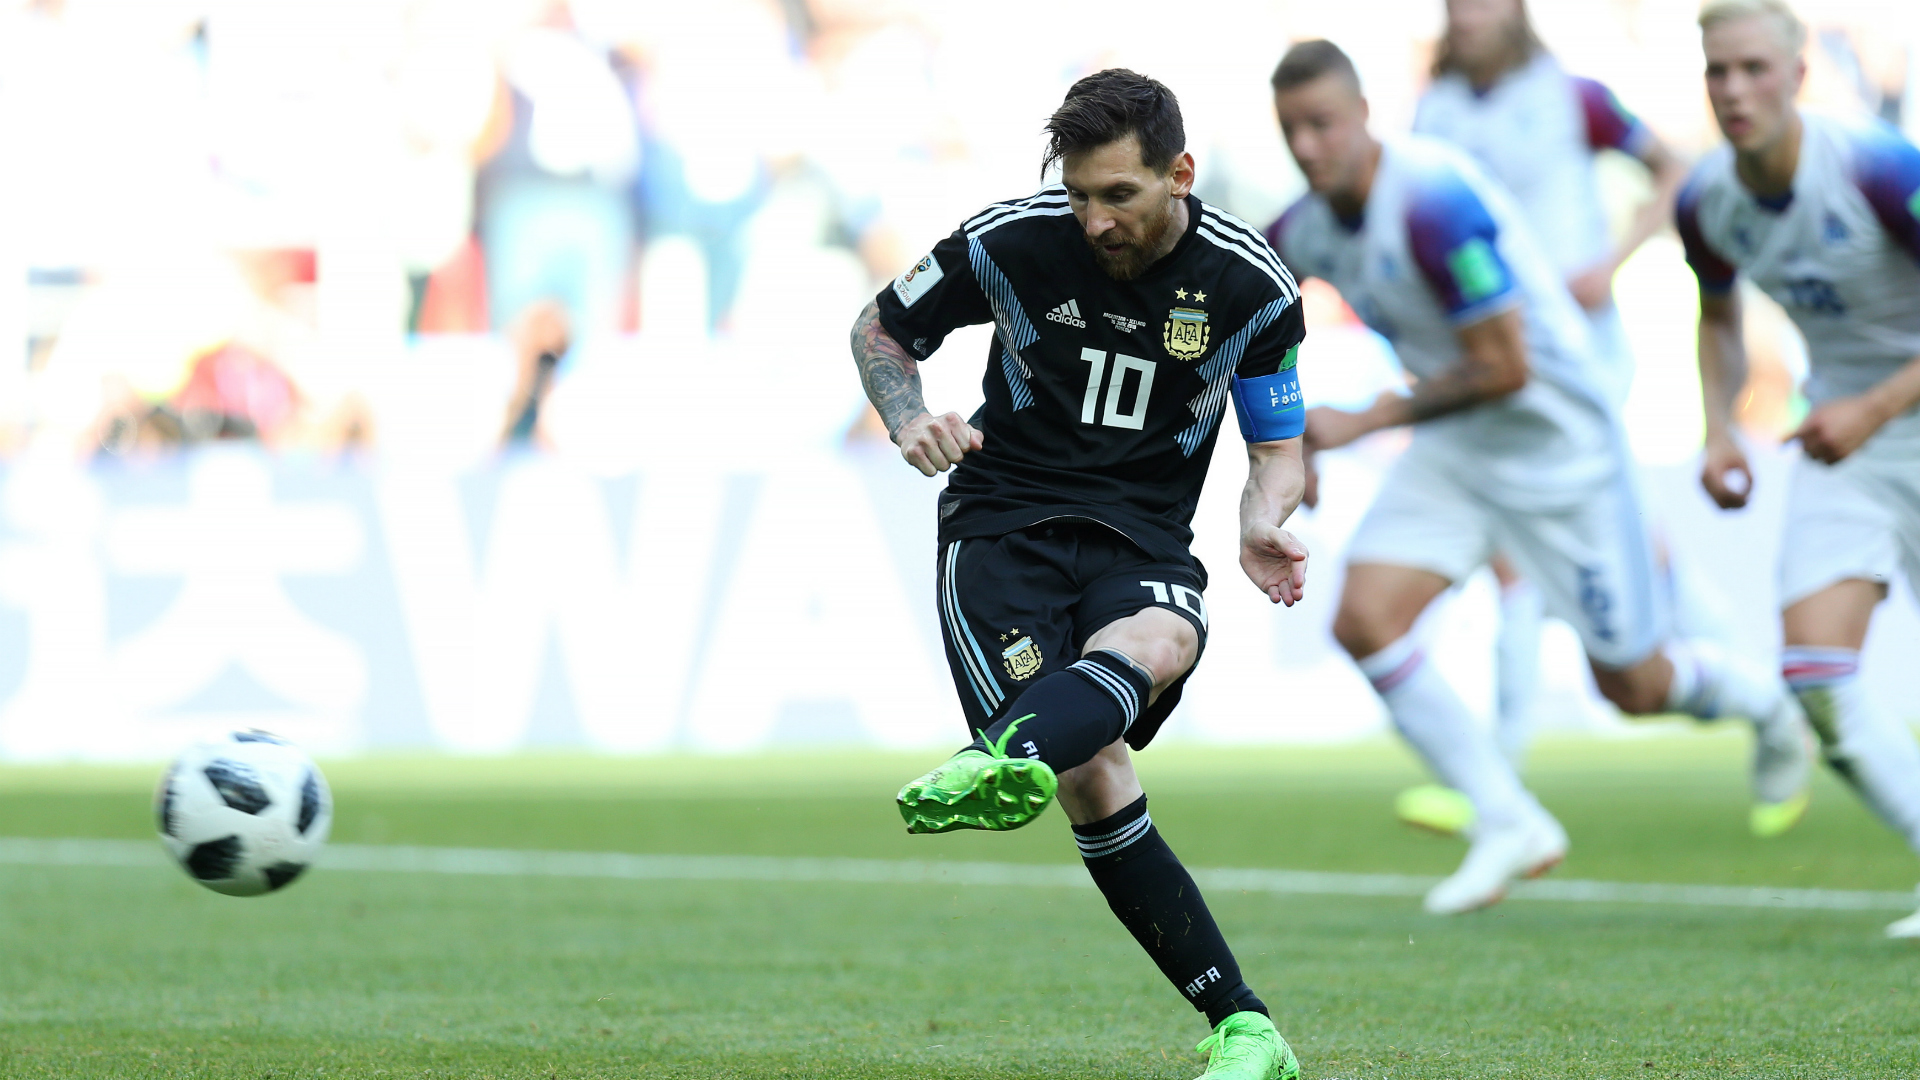 Muốn vô địch, Argentina cần bỏ khái niệm 'Messi' - Bóng Đá